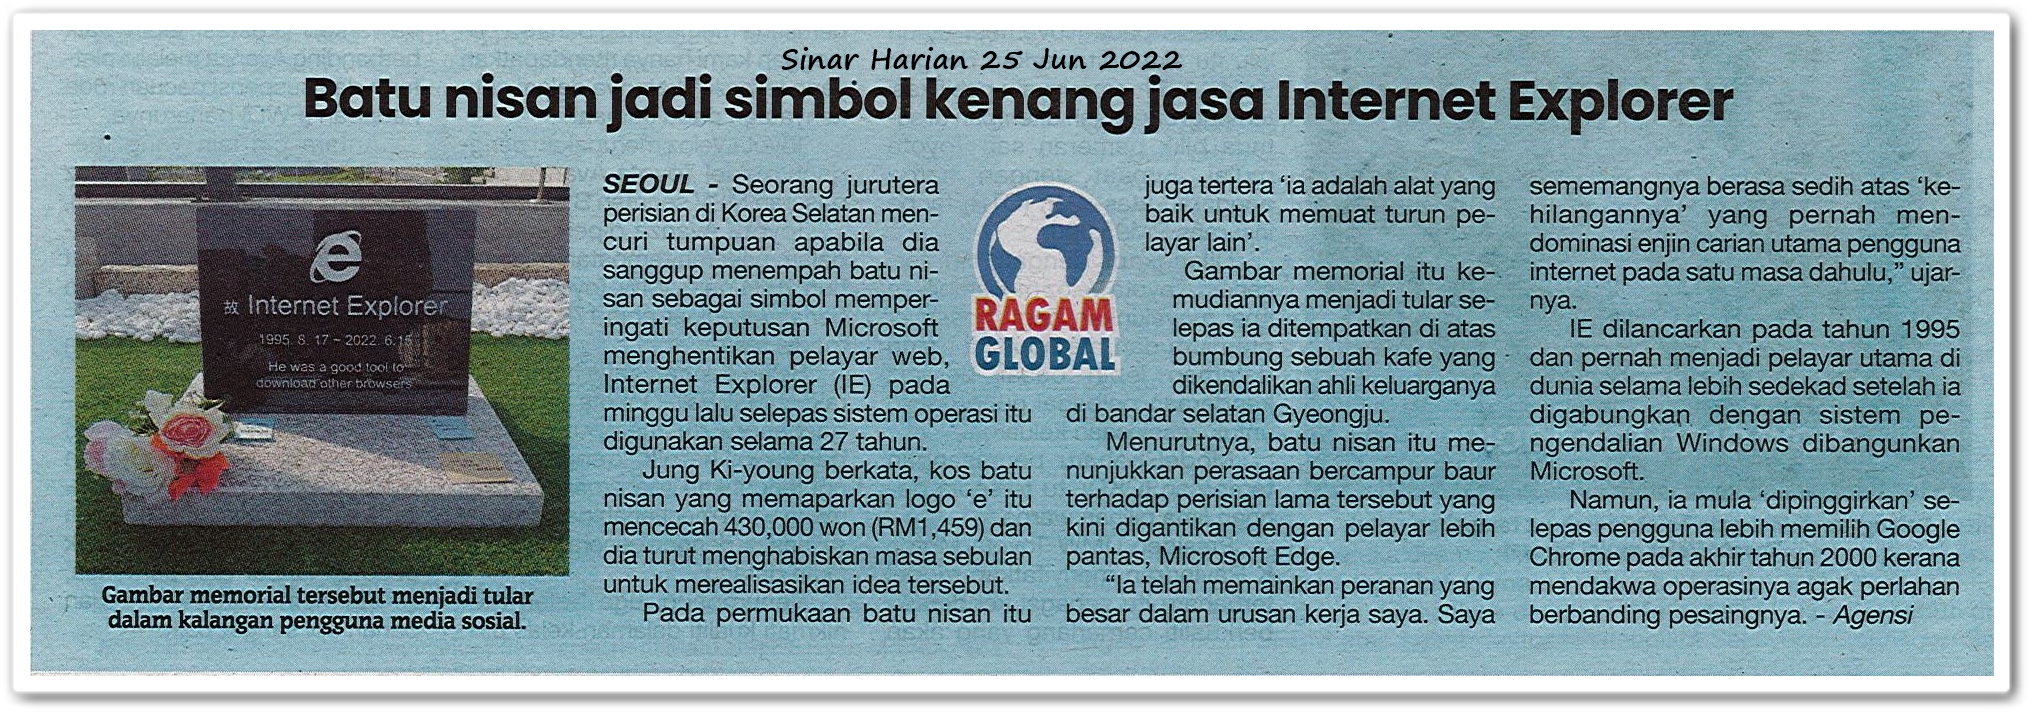 Batu nisan jadi simbol kenang jasa Internet Explorer - Keratan akhbar Sinar Harian 25 Jun 2022